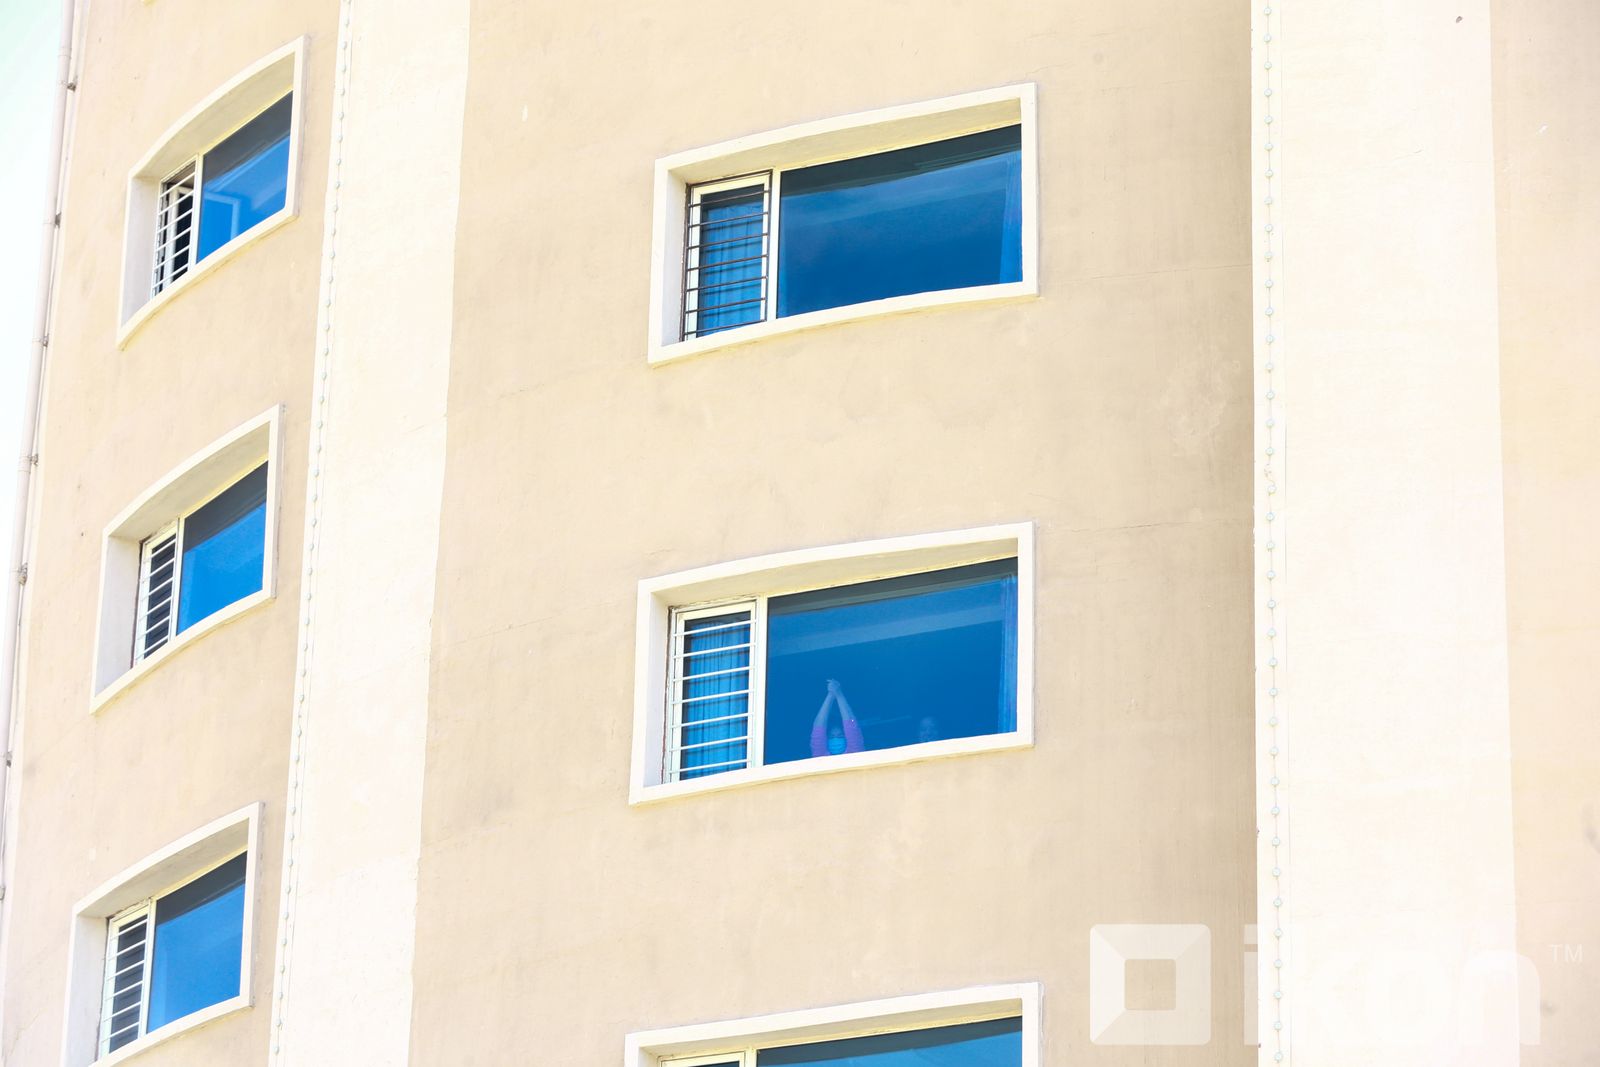 울란바타르에서는 39개 호텔 1,900개의 객실이 격리를 위해 사용되고 있어.jpg